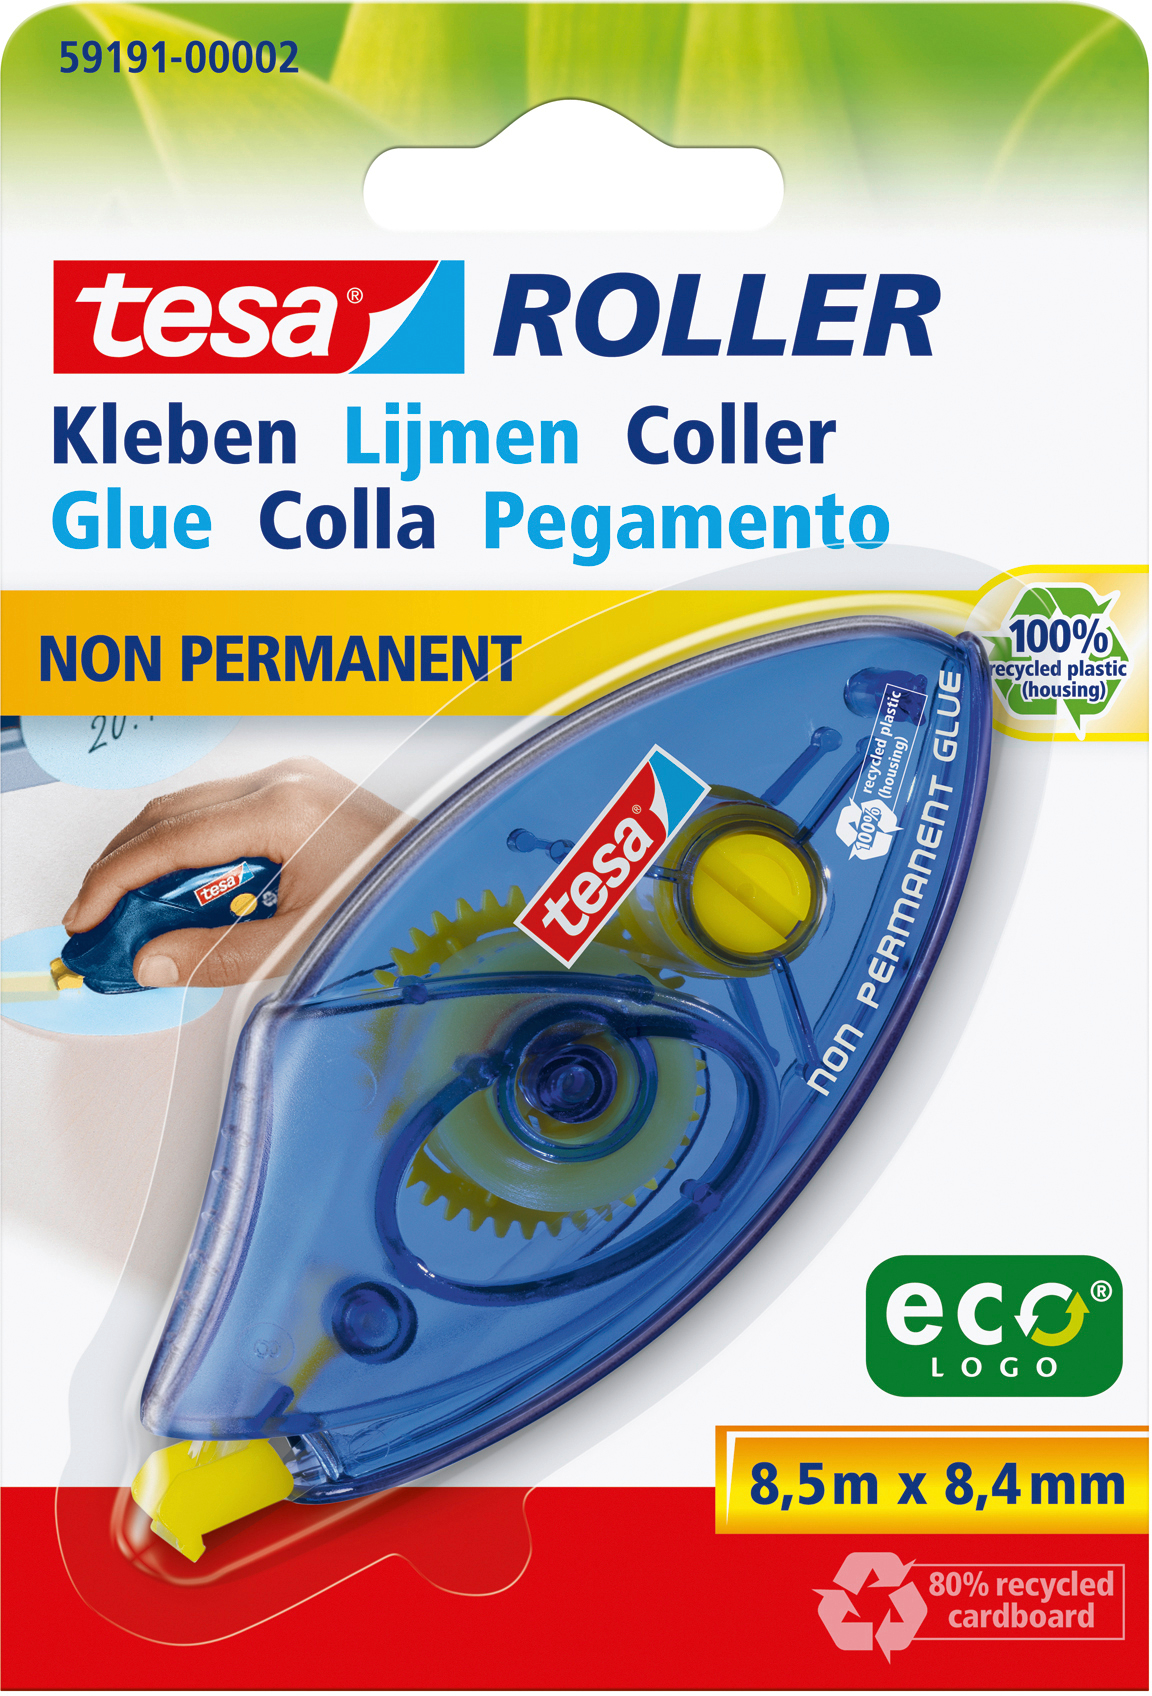 TESA Roller de colle 591910000 8,4mmx8,5m non-perm.